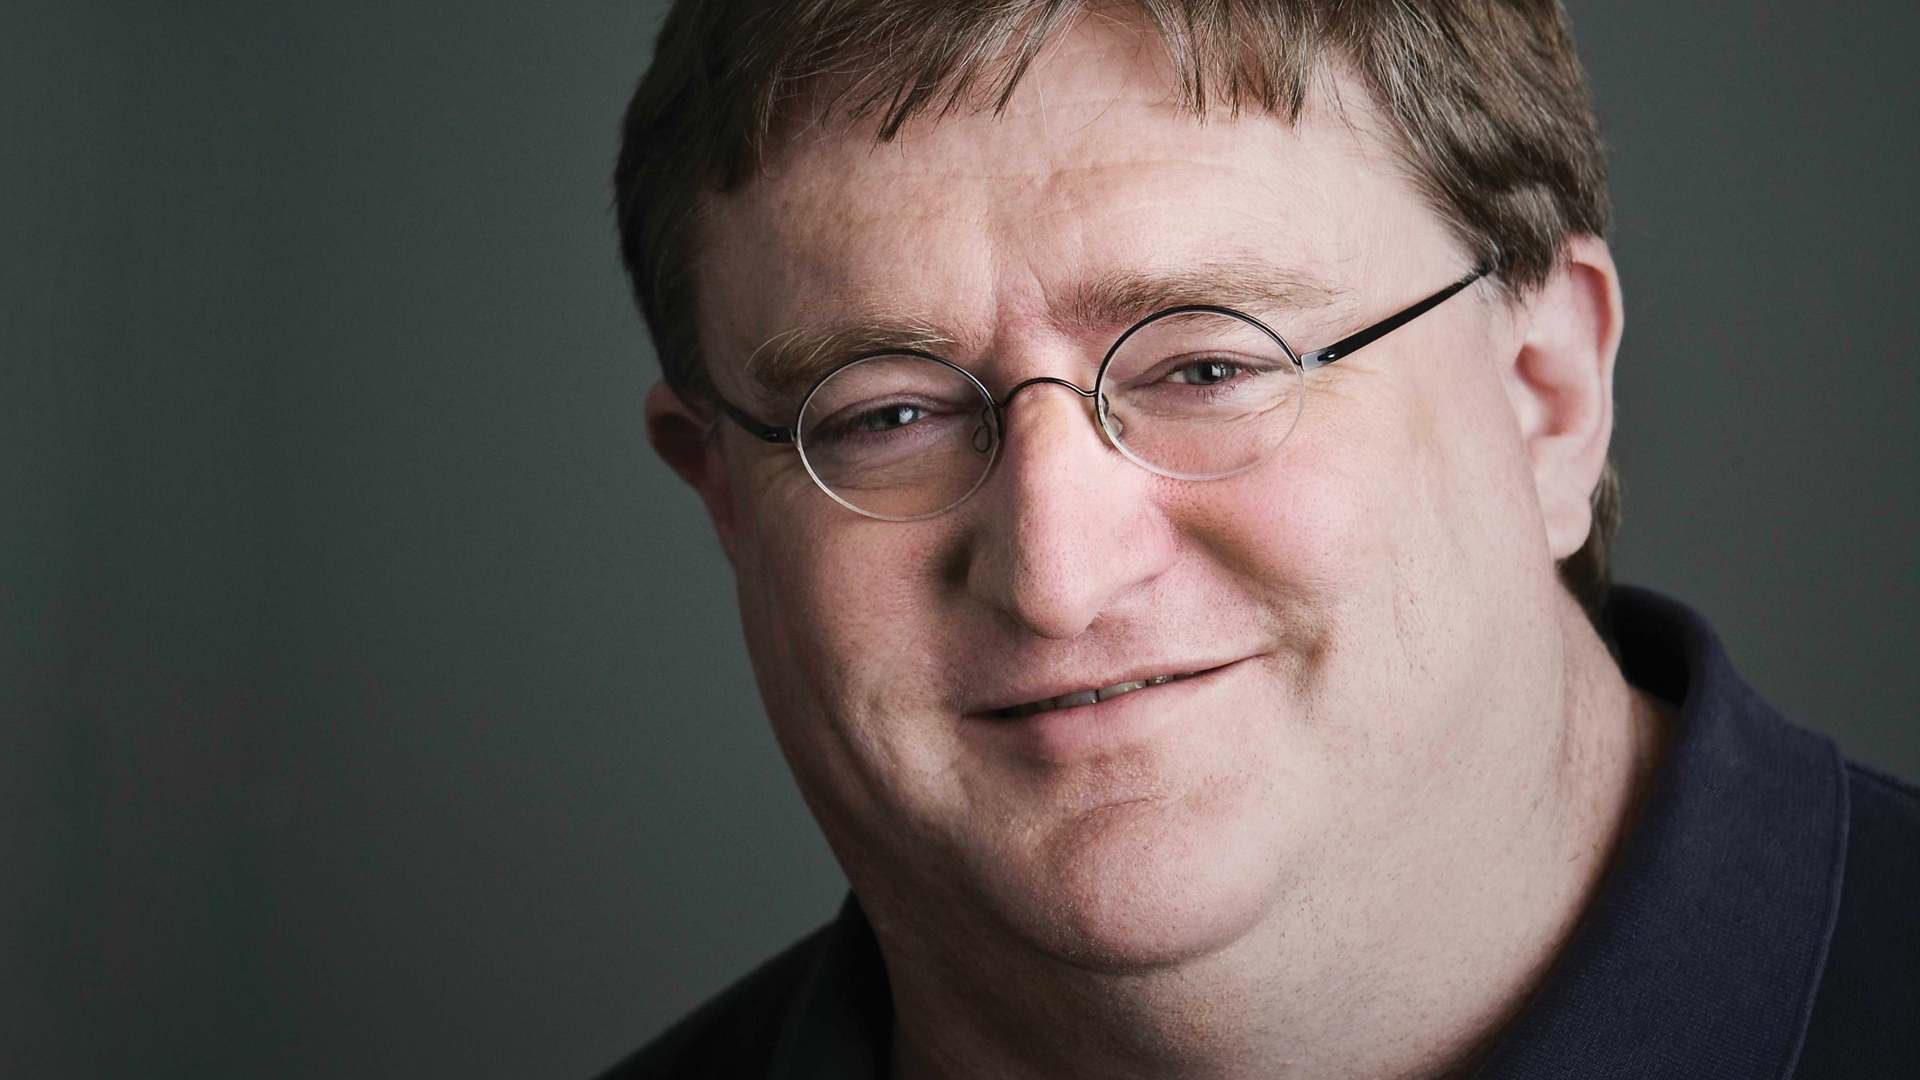 Melhores papéis de parede de Gabe Newell para tela do telefone